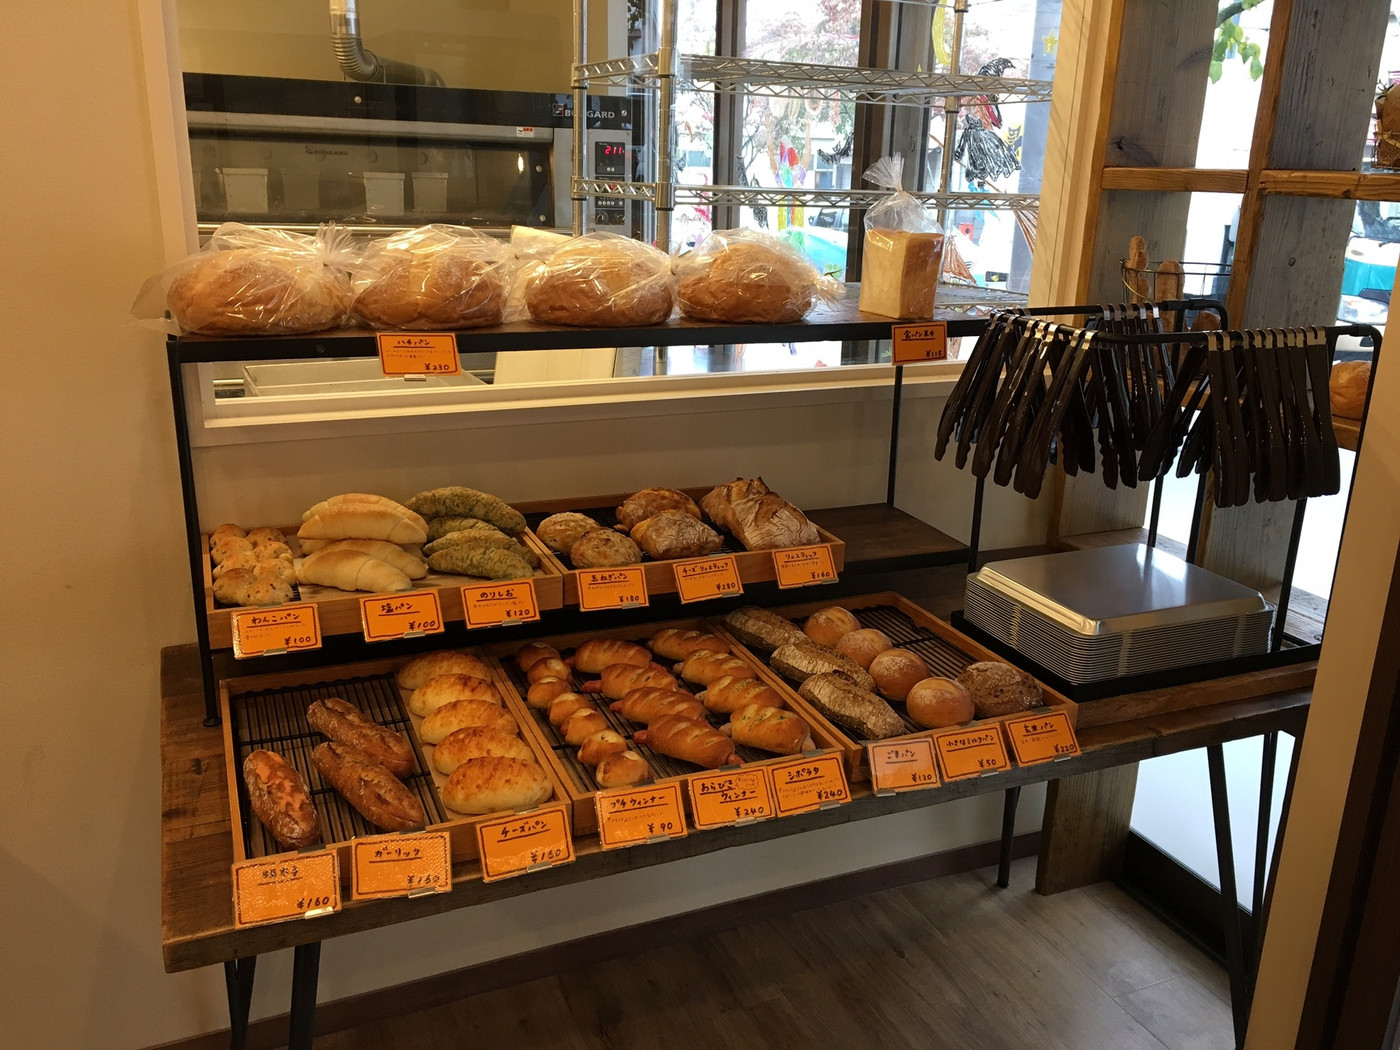 ハード系を中心に、パン好きの心をくすぐル商品が並びます1394038